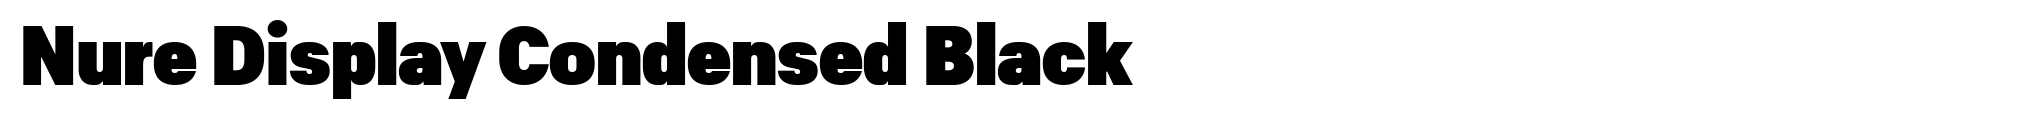 Nure Display Condensed Black image